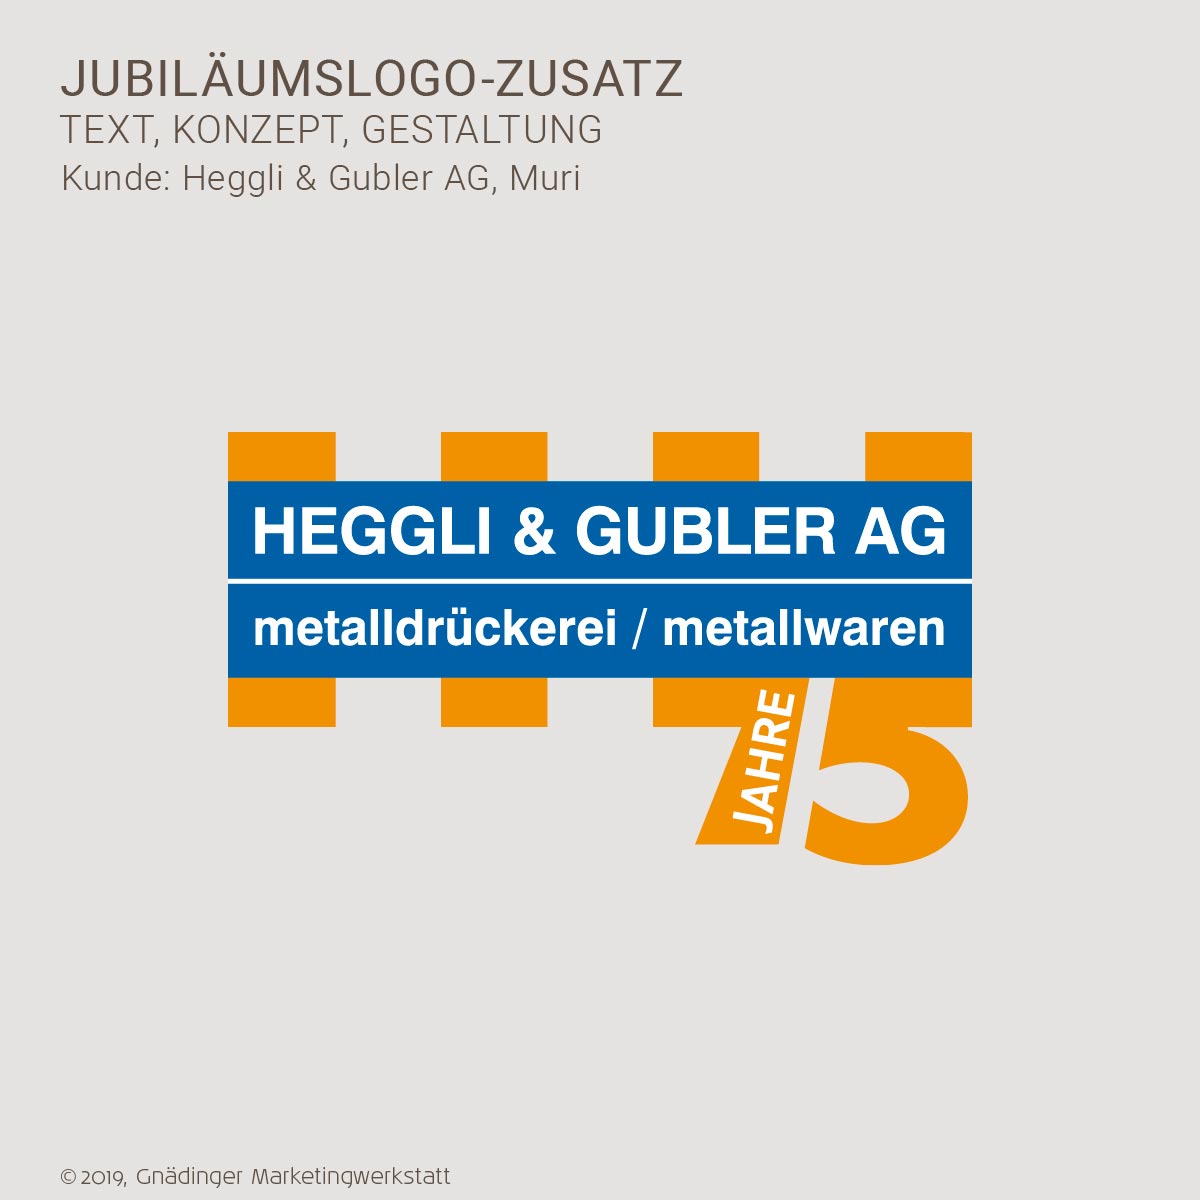 WEB1_GMW_Projekt_Heggli-Gubler-Jubilaeumslogo_01-2020_1200x1200px_RGB